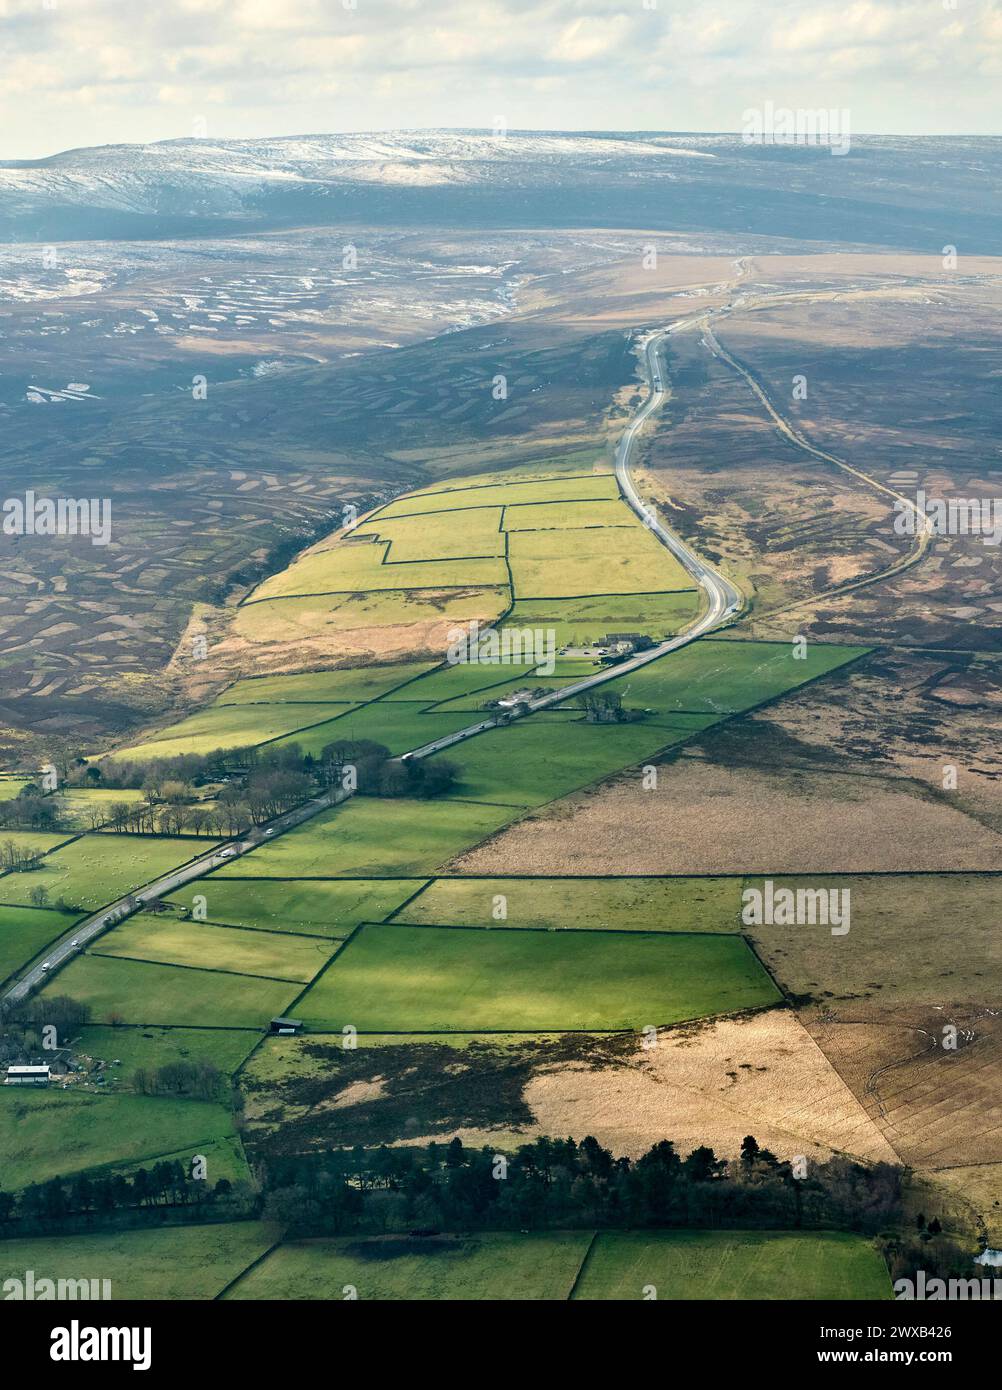 Une image aérienne de la route A628 Woodhead à travers les Pennines, prise en regardant vers l'ouest depuis Langsett, South Yorkshire, dans le nord de l'Angleterre Banque D'Images